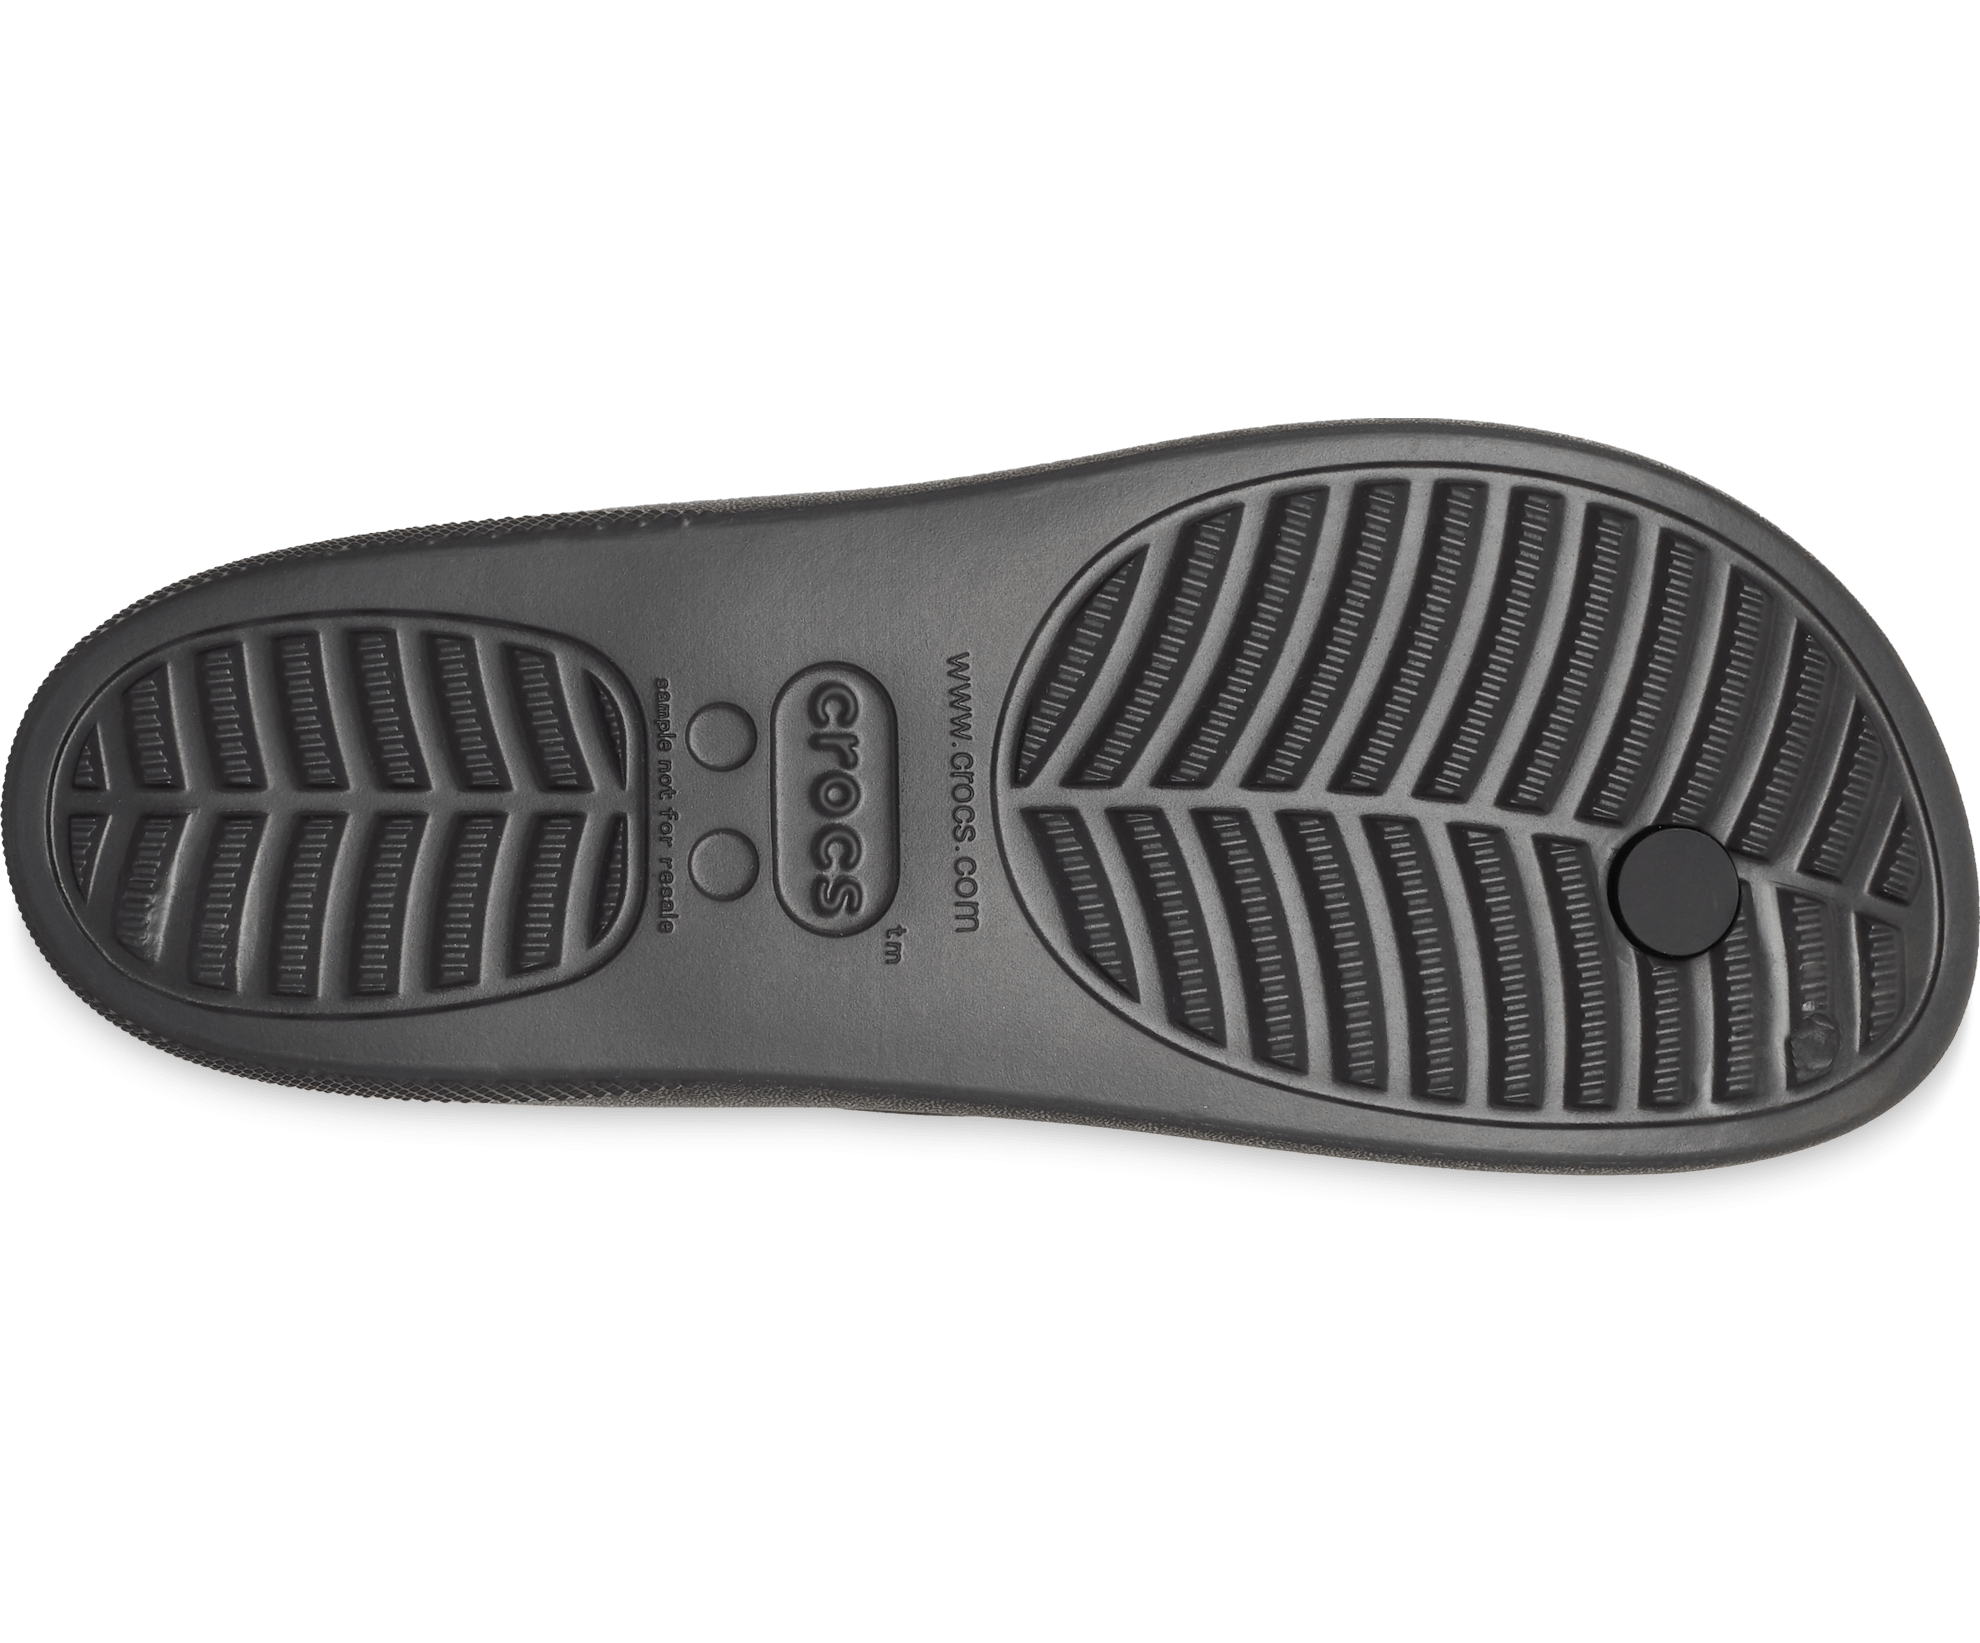 Crocs Unisex Classic Platform Flip Flop - Black